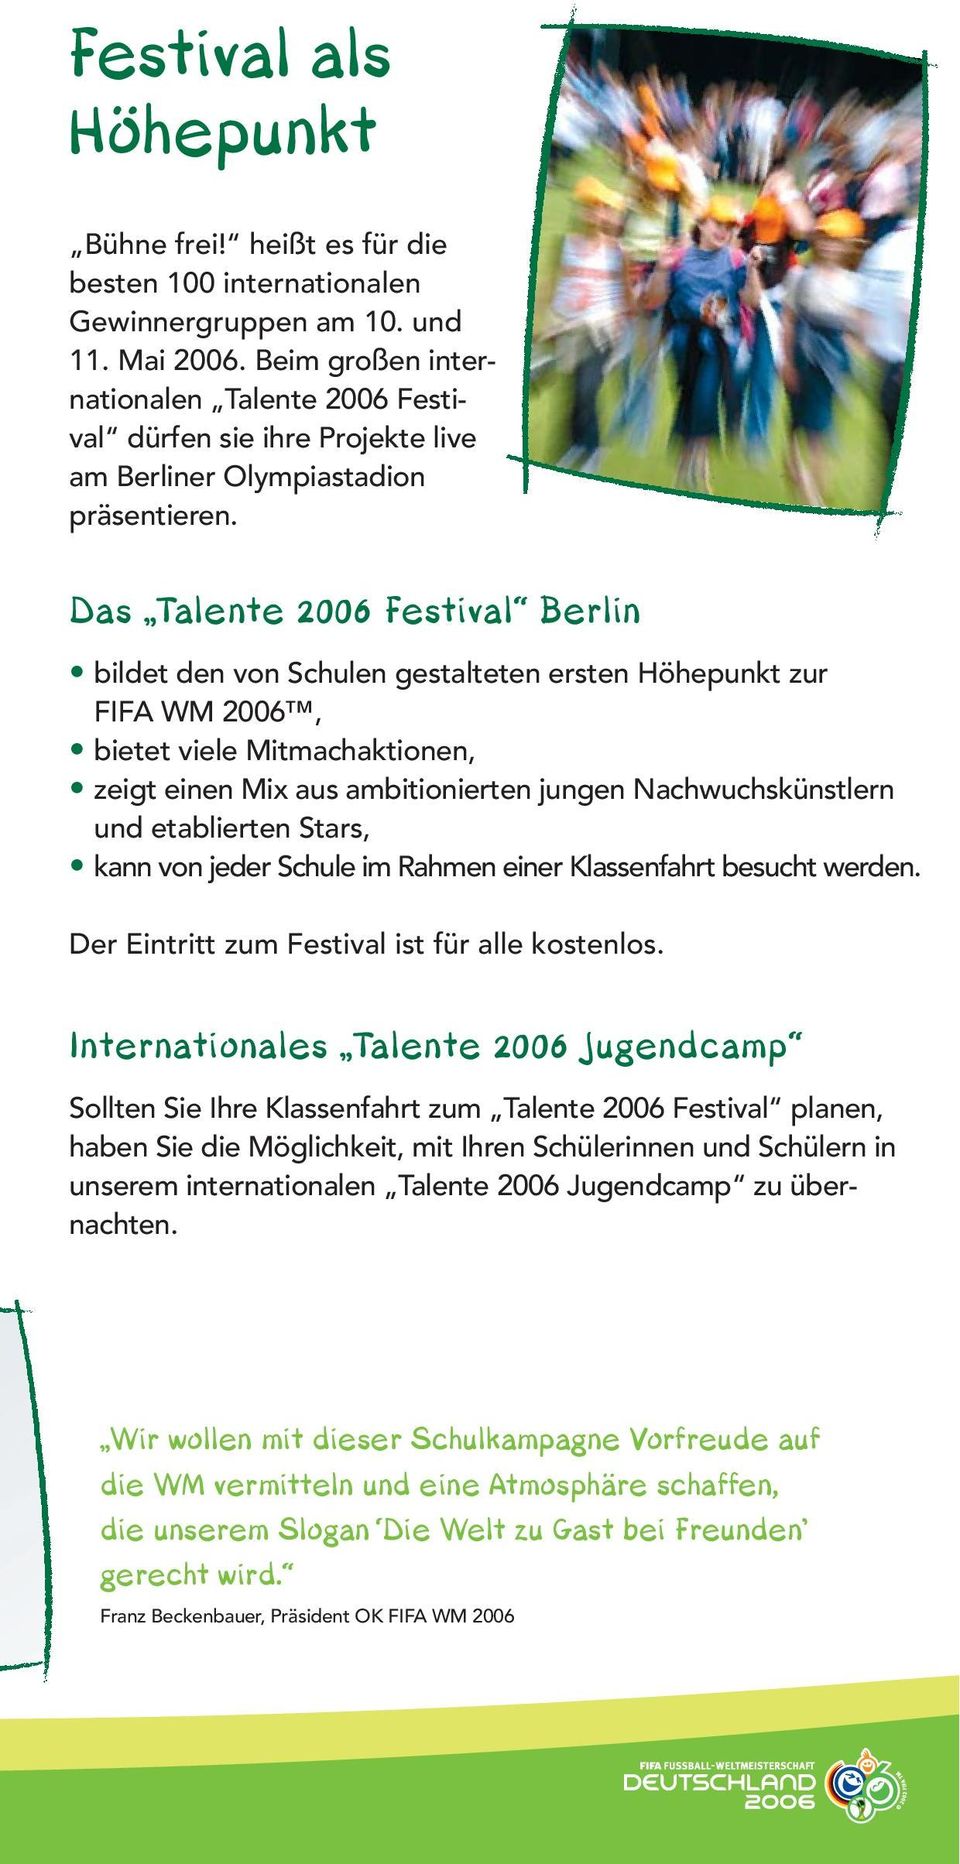 Das Talente 2006 Festival Berlin bildet den von Schulen gestalteten ersten Höhepunkt zur FIFA WM 2006, bietet viele Mitmachaktionen, zeigt einen Mix aus ambitionierten jungen Nachwuchskünstlern und